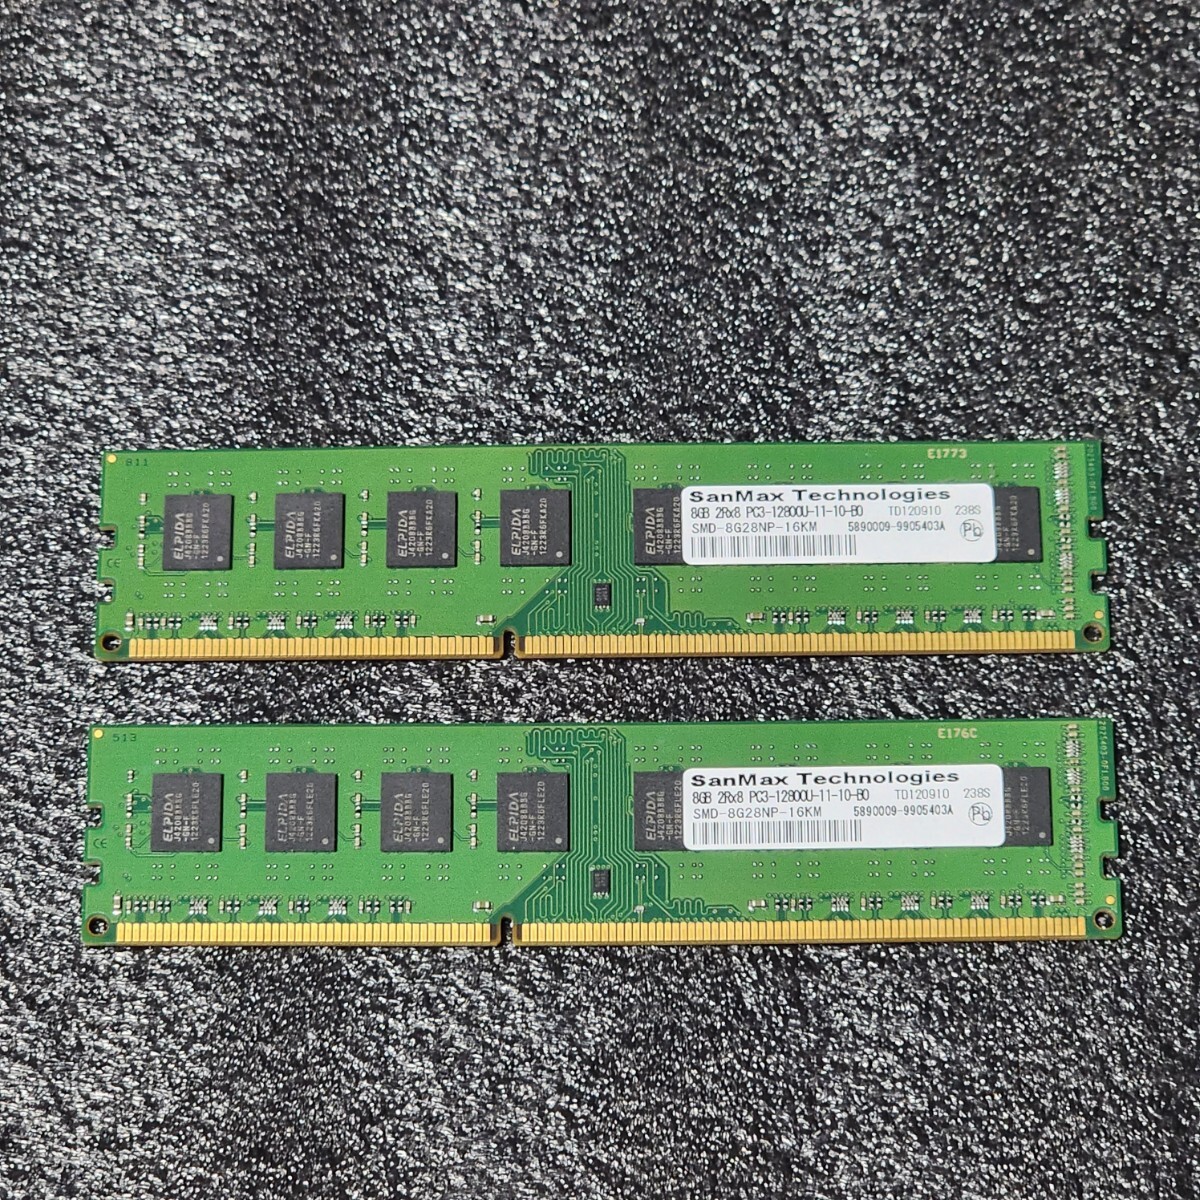 SanMax DDR3-1600MHz 16GB (8GB×2枚キット) SMD-4G28NP-16KM 動作確認済み デスクトップ用 PCメモリ (2)